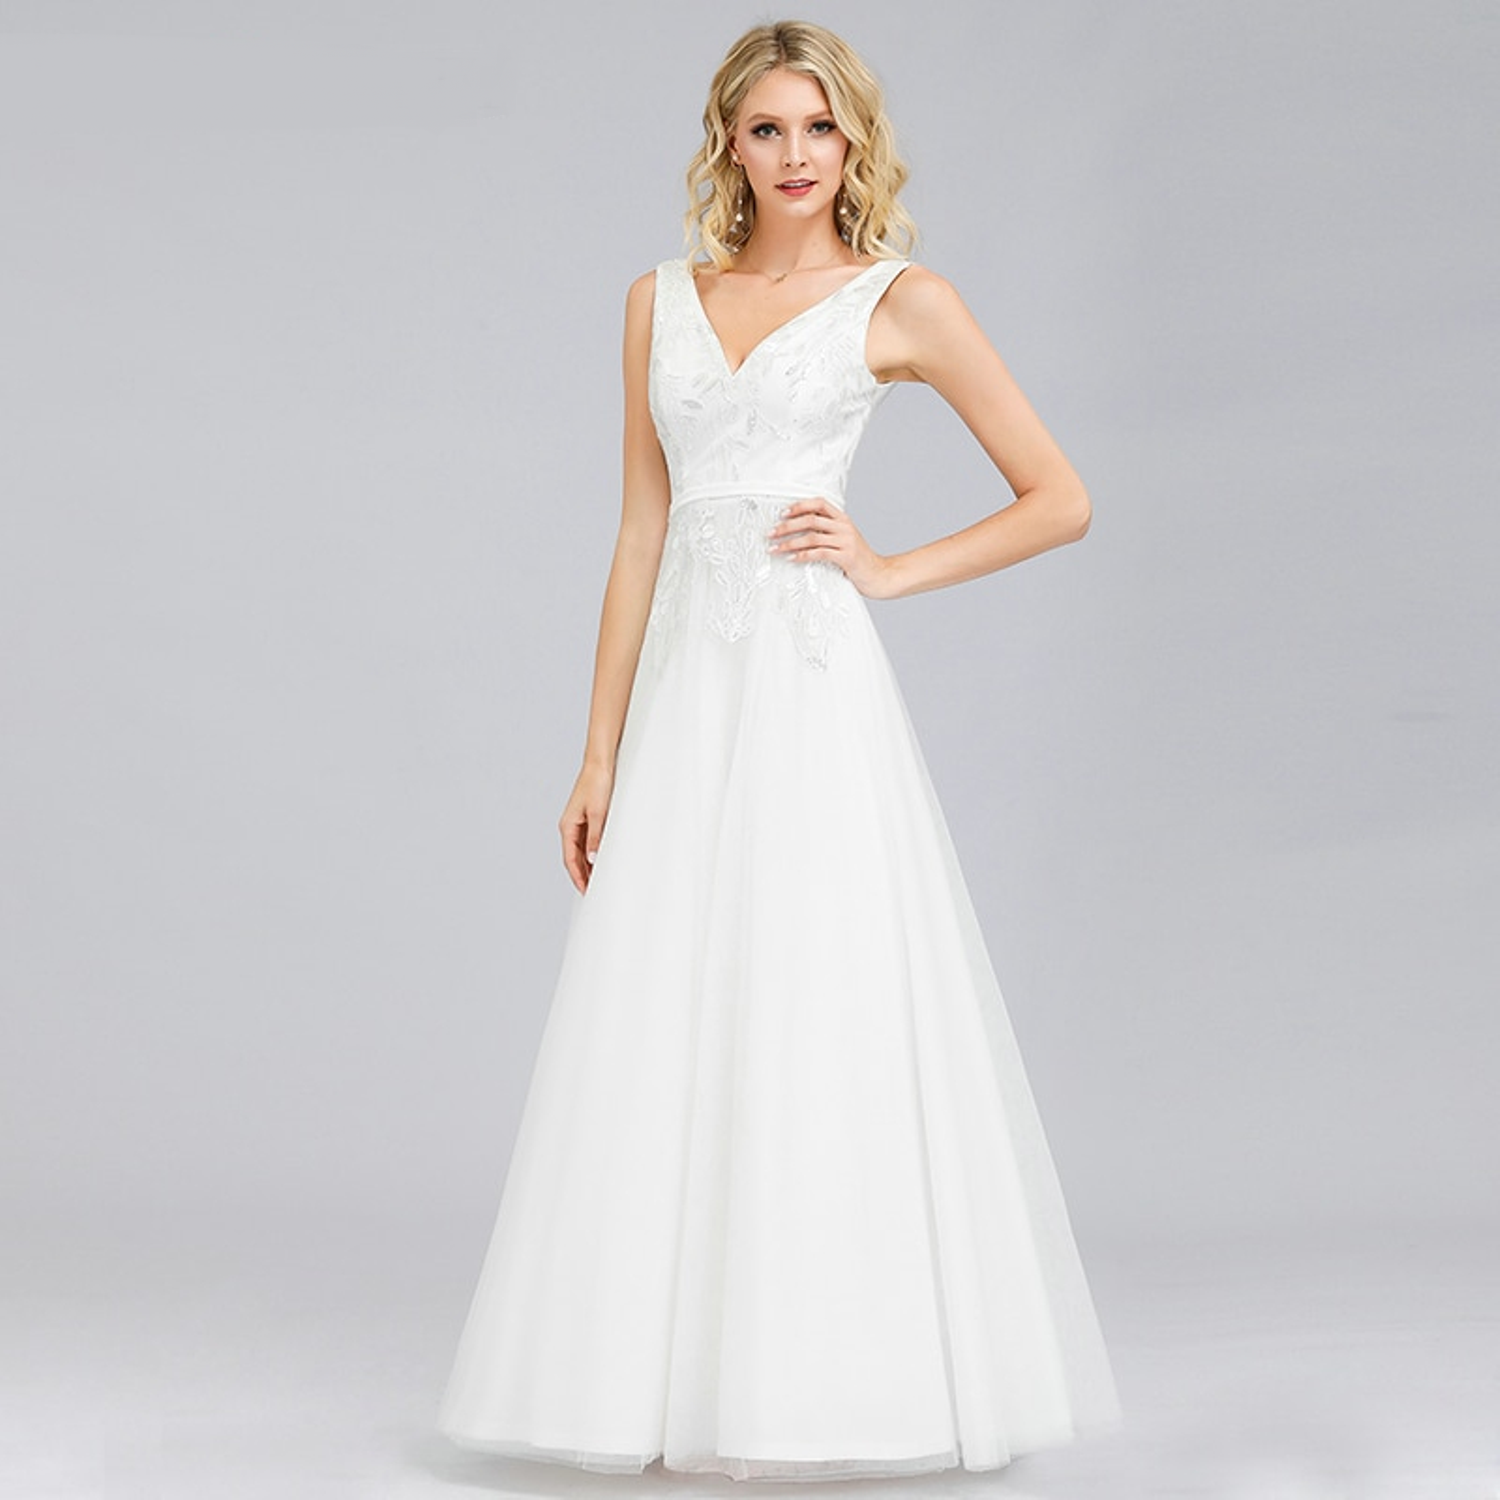 Elegant A-line wedding gown